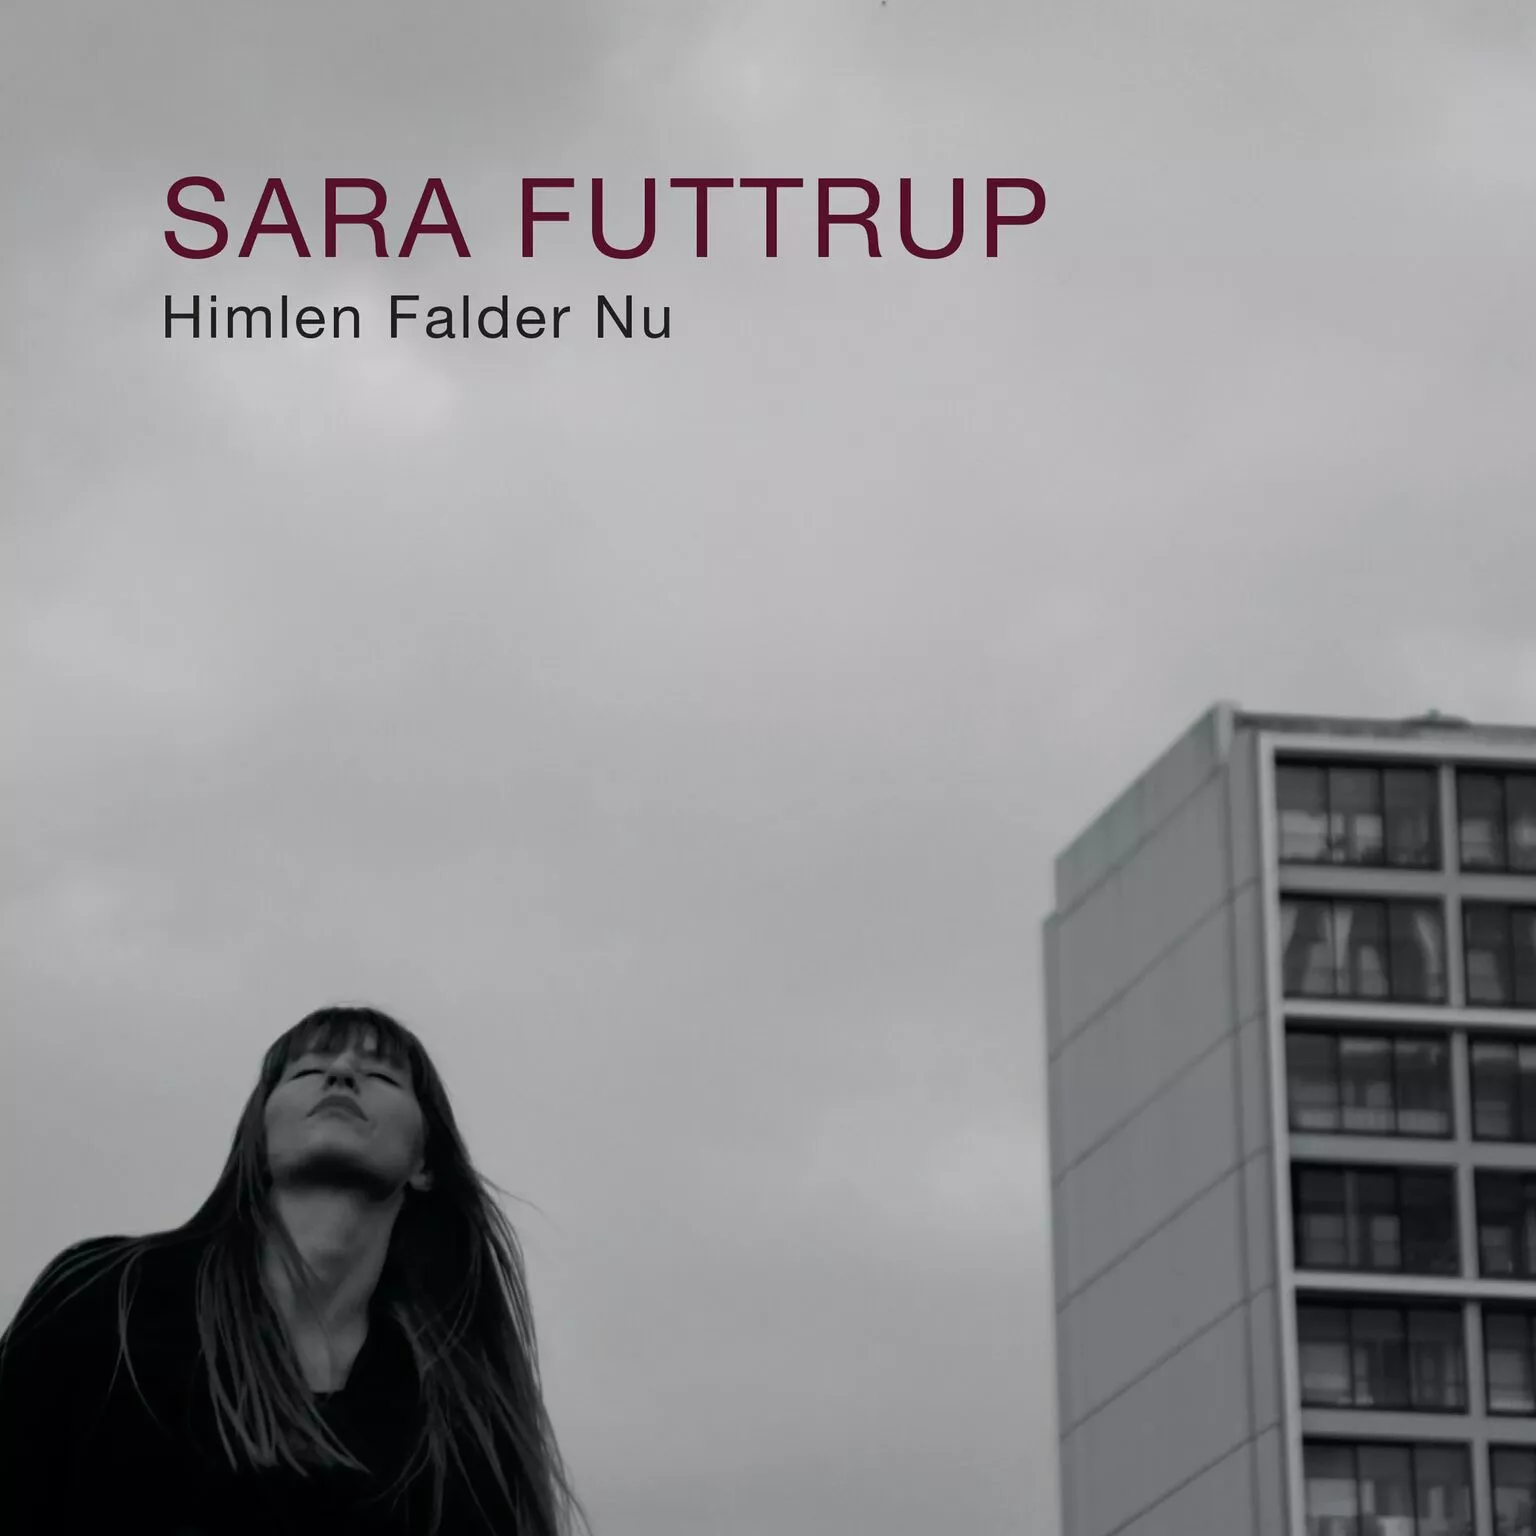 Himlen falder nu - Sara Futtrup